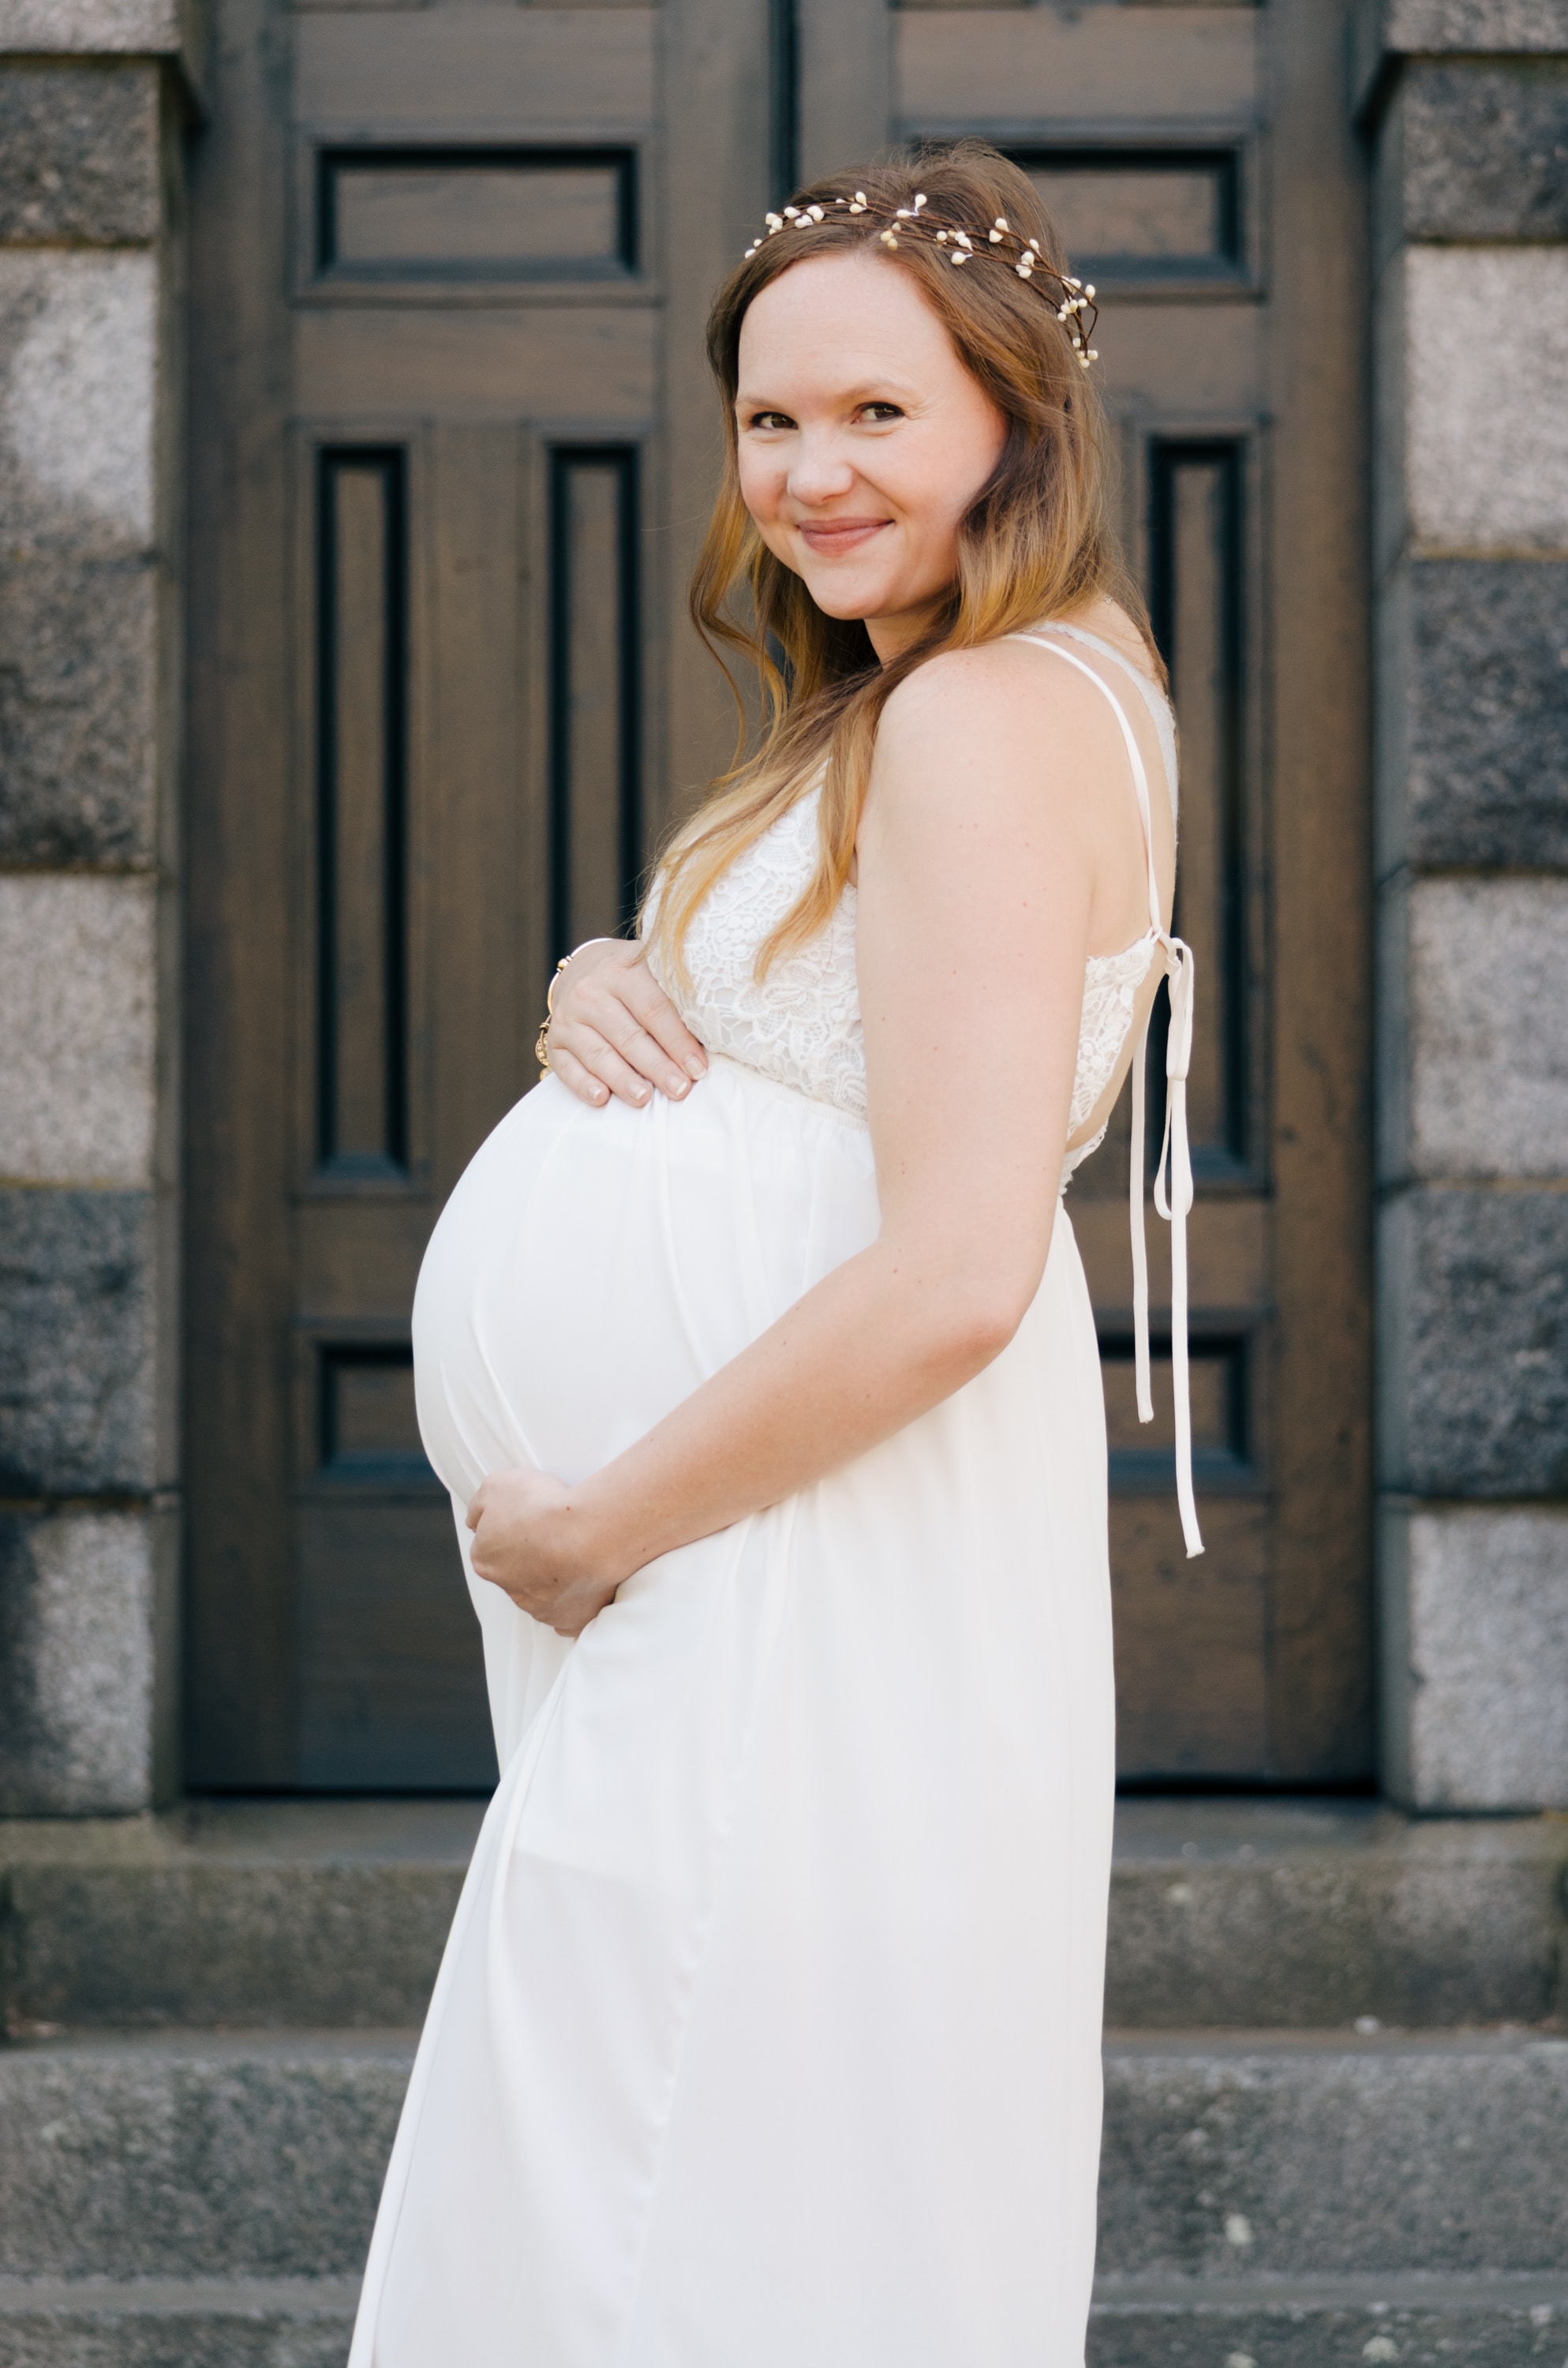 Une femme enceinte heureuse tient son baby bump | Source : Unsplash